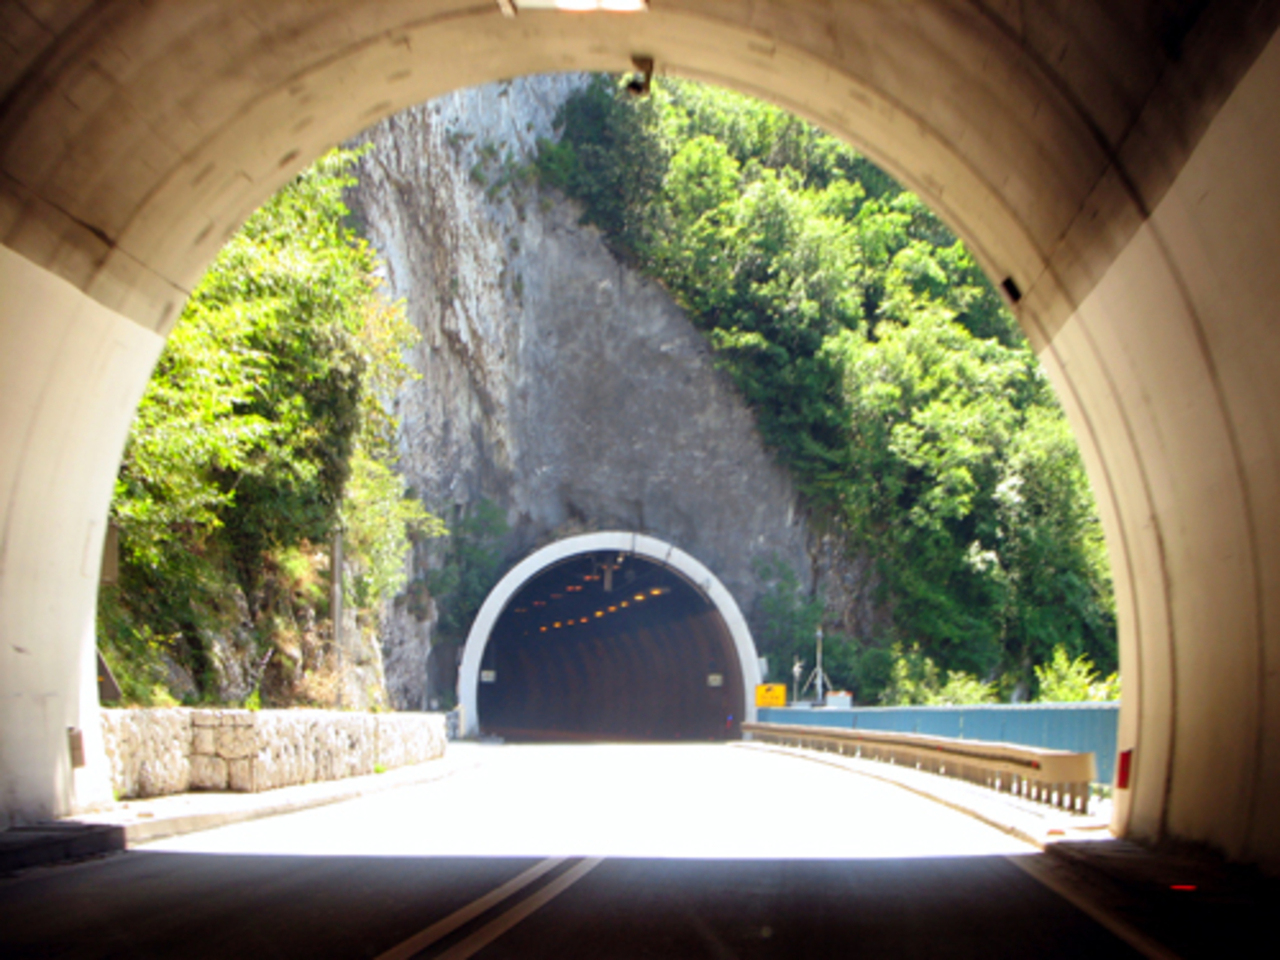 Туннель Учка в Хорватии. В 1981 году под Учкой, прикрывающей город Опатию от ветров, проложили пятикилометровый туннель. 

Он выстроен прямо в горе 1396 м высотой.  Есть уникальный природный парк Учка, весьма известное  туристическое место. 

Туннель не менее уникален, он высечен в скале в 5 километров 62 метра длиной и является самым длинным из подобных в Хорватии. 

Стоимость проезда по нему составляет 28 кун. По туннелю можно попасть в крунейший город - порт Риеку. http://www.diary.ru/~Zainka-

Gwena/p55533982.htm
 Phenix